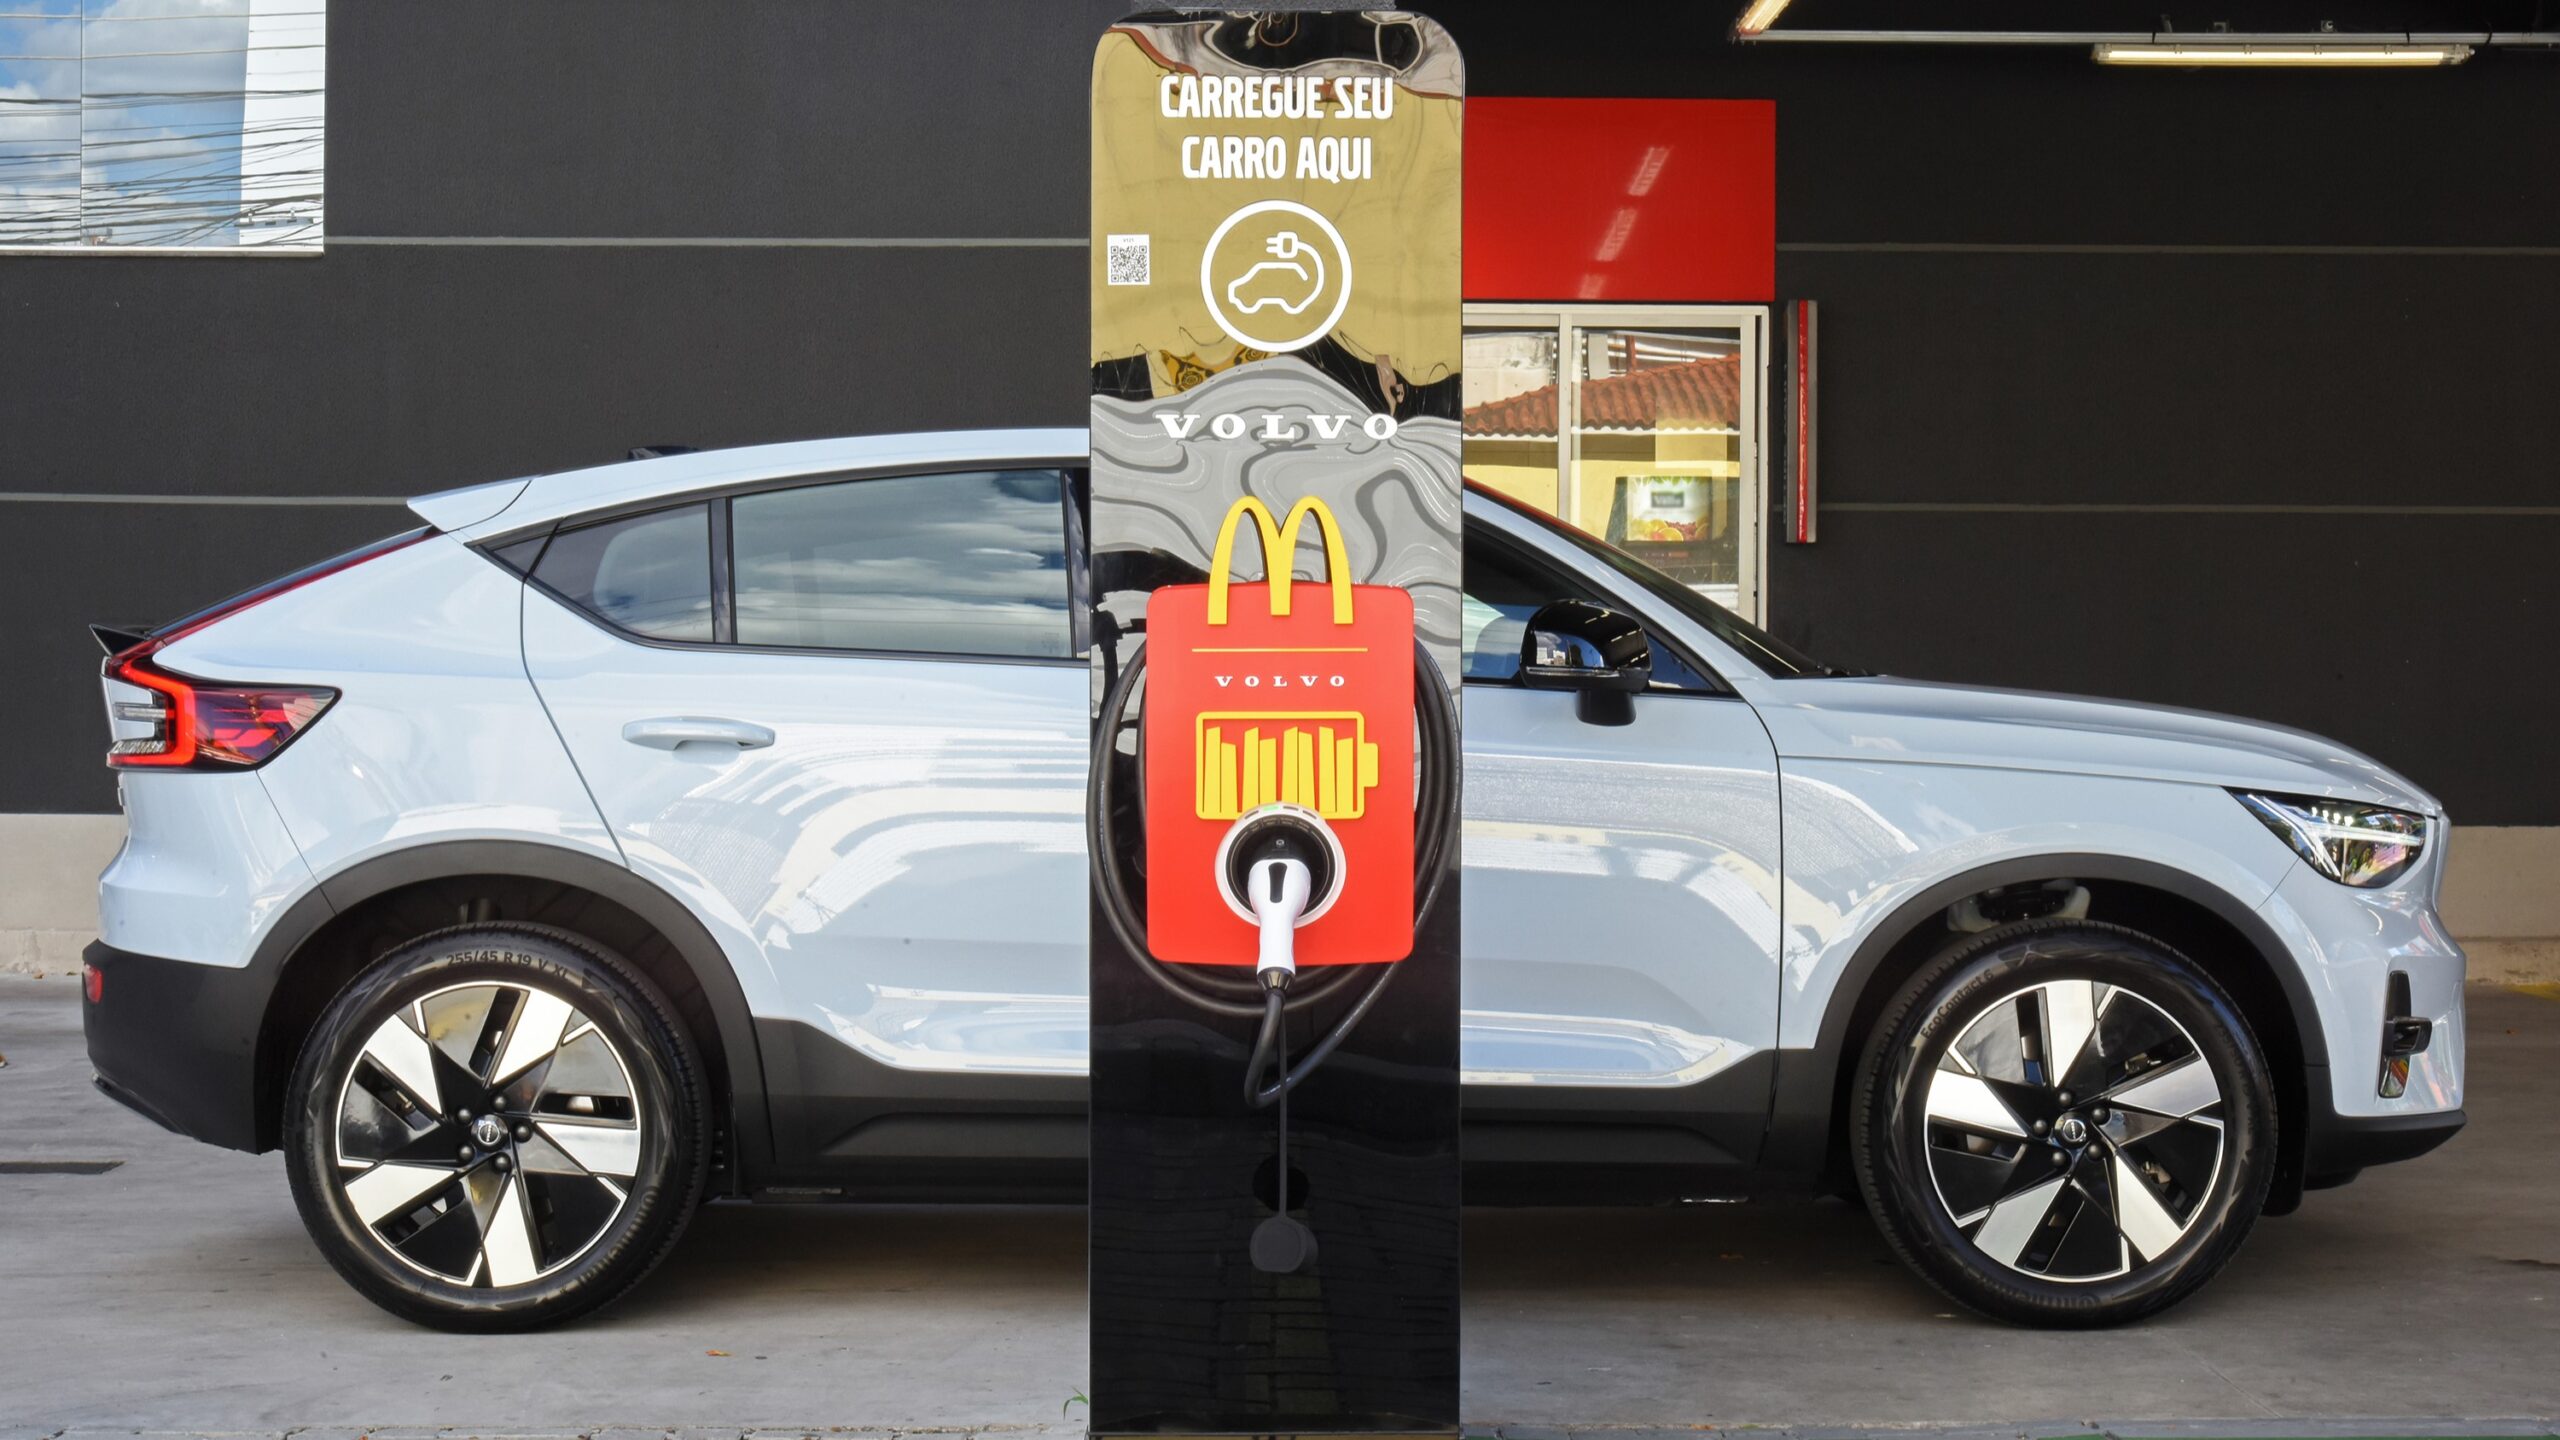 [Brasil] Volvo Car Brasil e McDonald’s disponibilizam carregamento para veículos elétricos em restaurantes